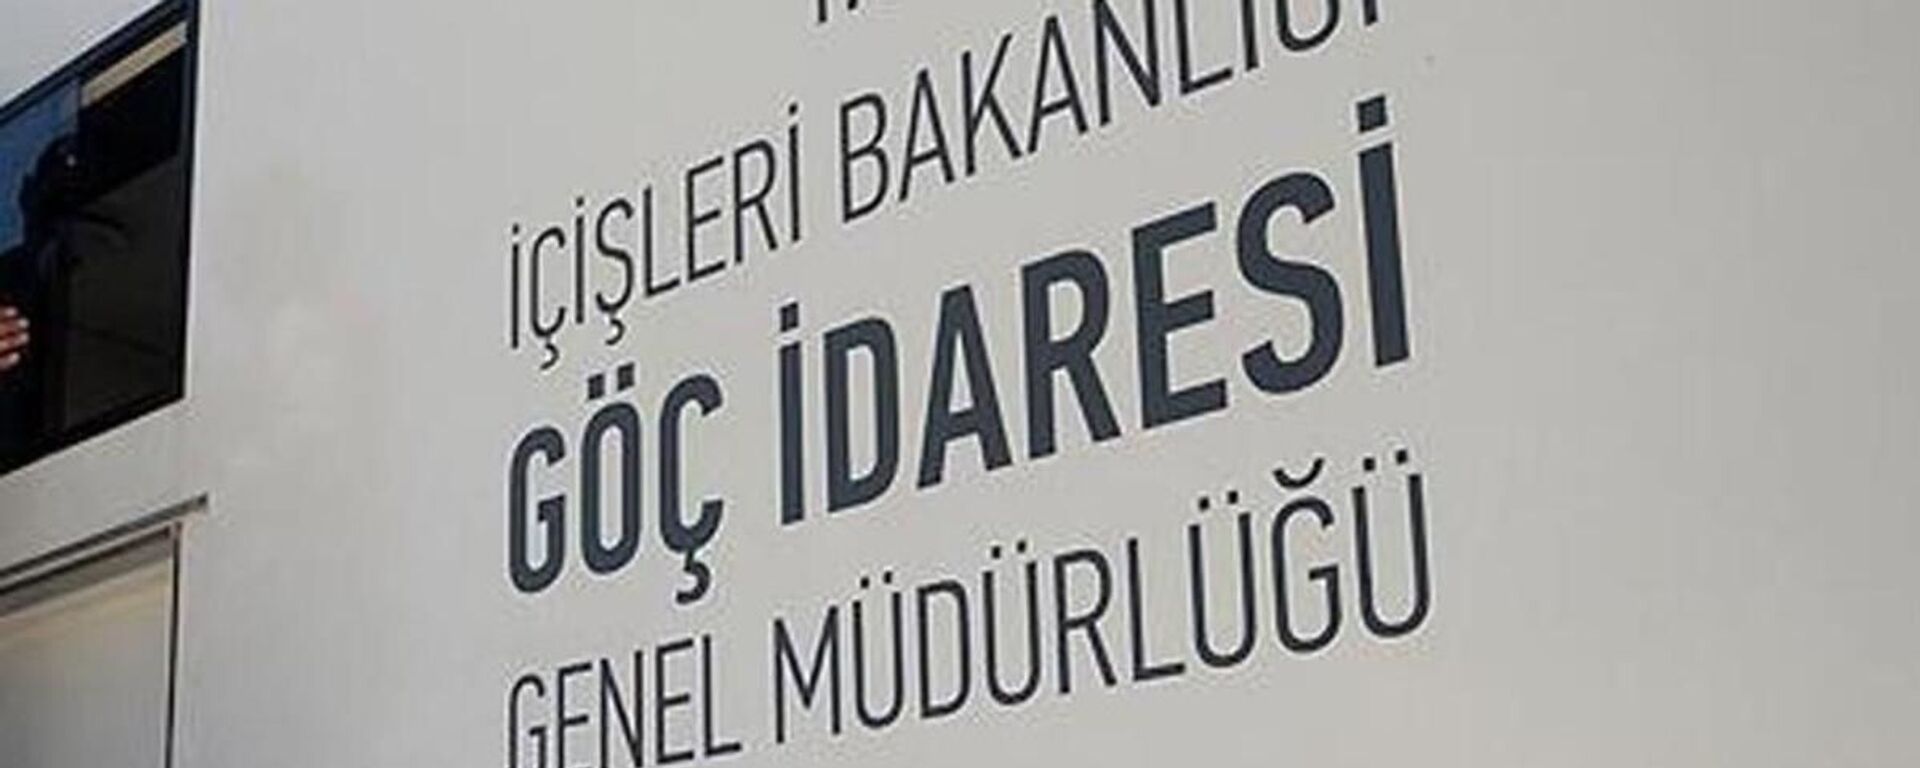 Göç İdaresi Genel Müdürlüğü - Sputnik Türkiye, 1920, 27.10.2021